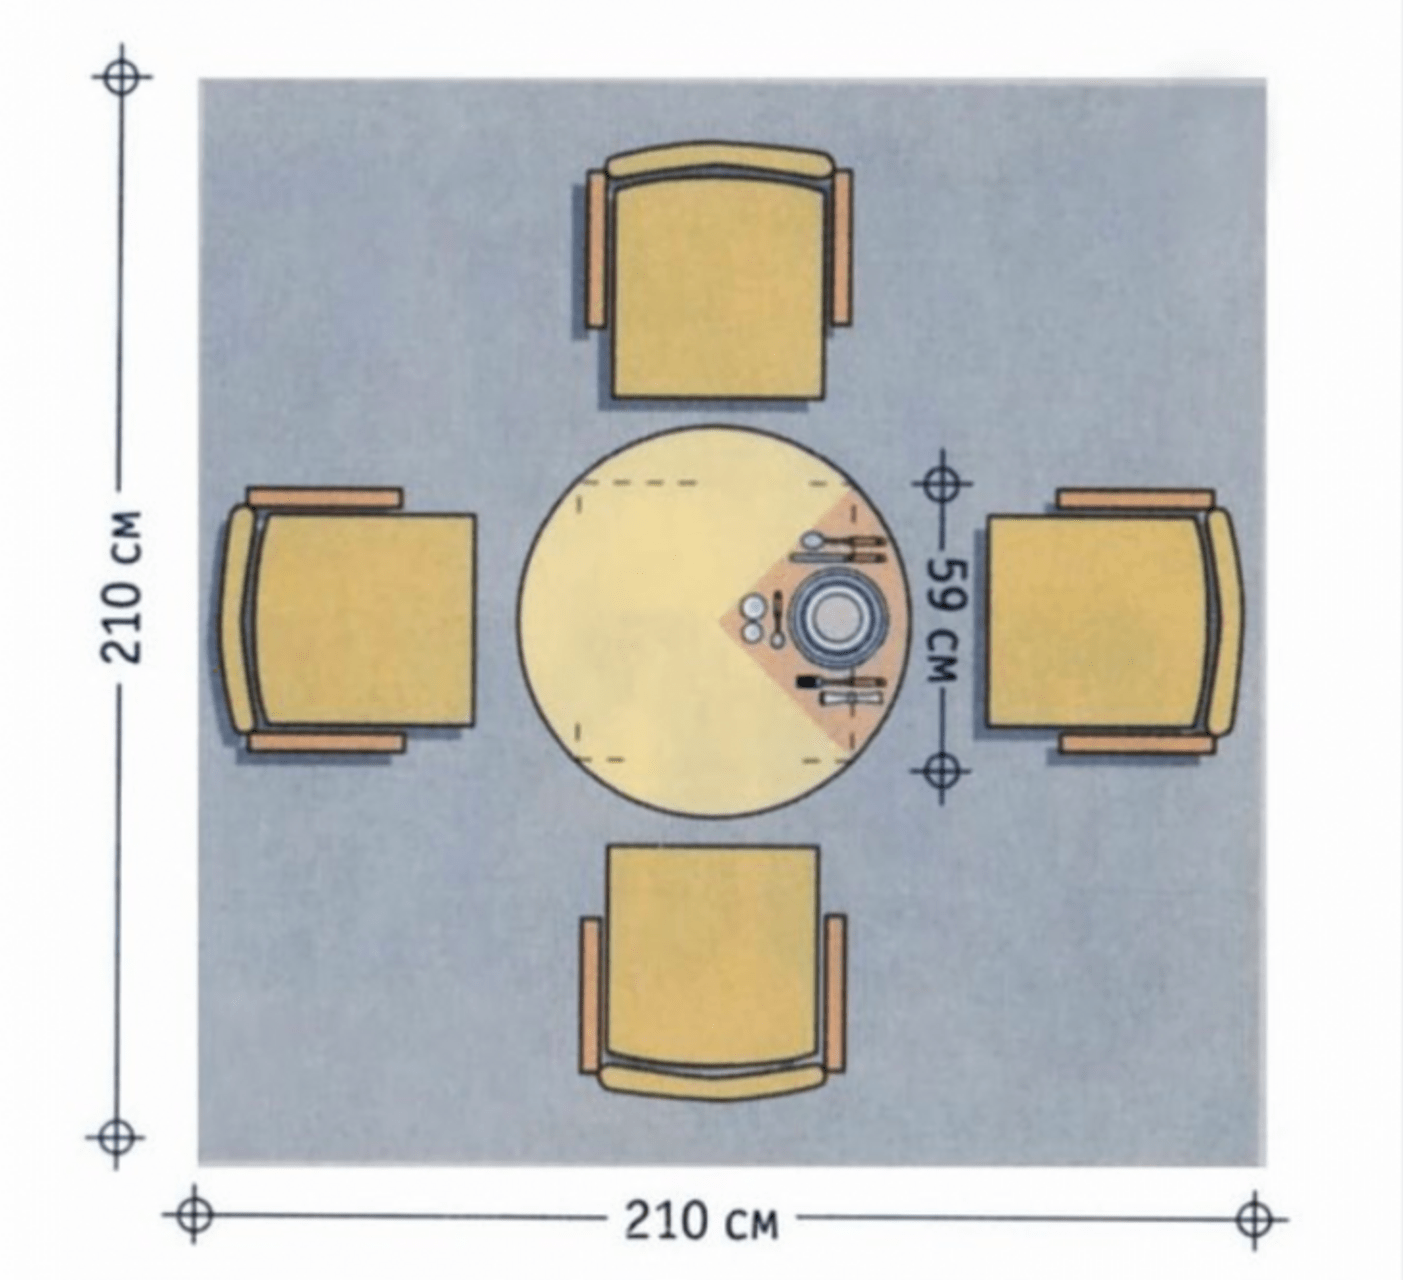 Размеры обеденных столов разных форм, советы по выбору мебели 25 - ДиванеТТо